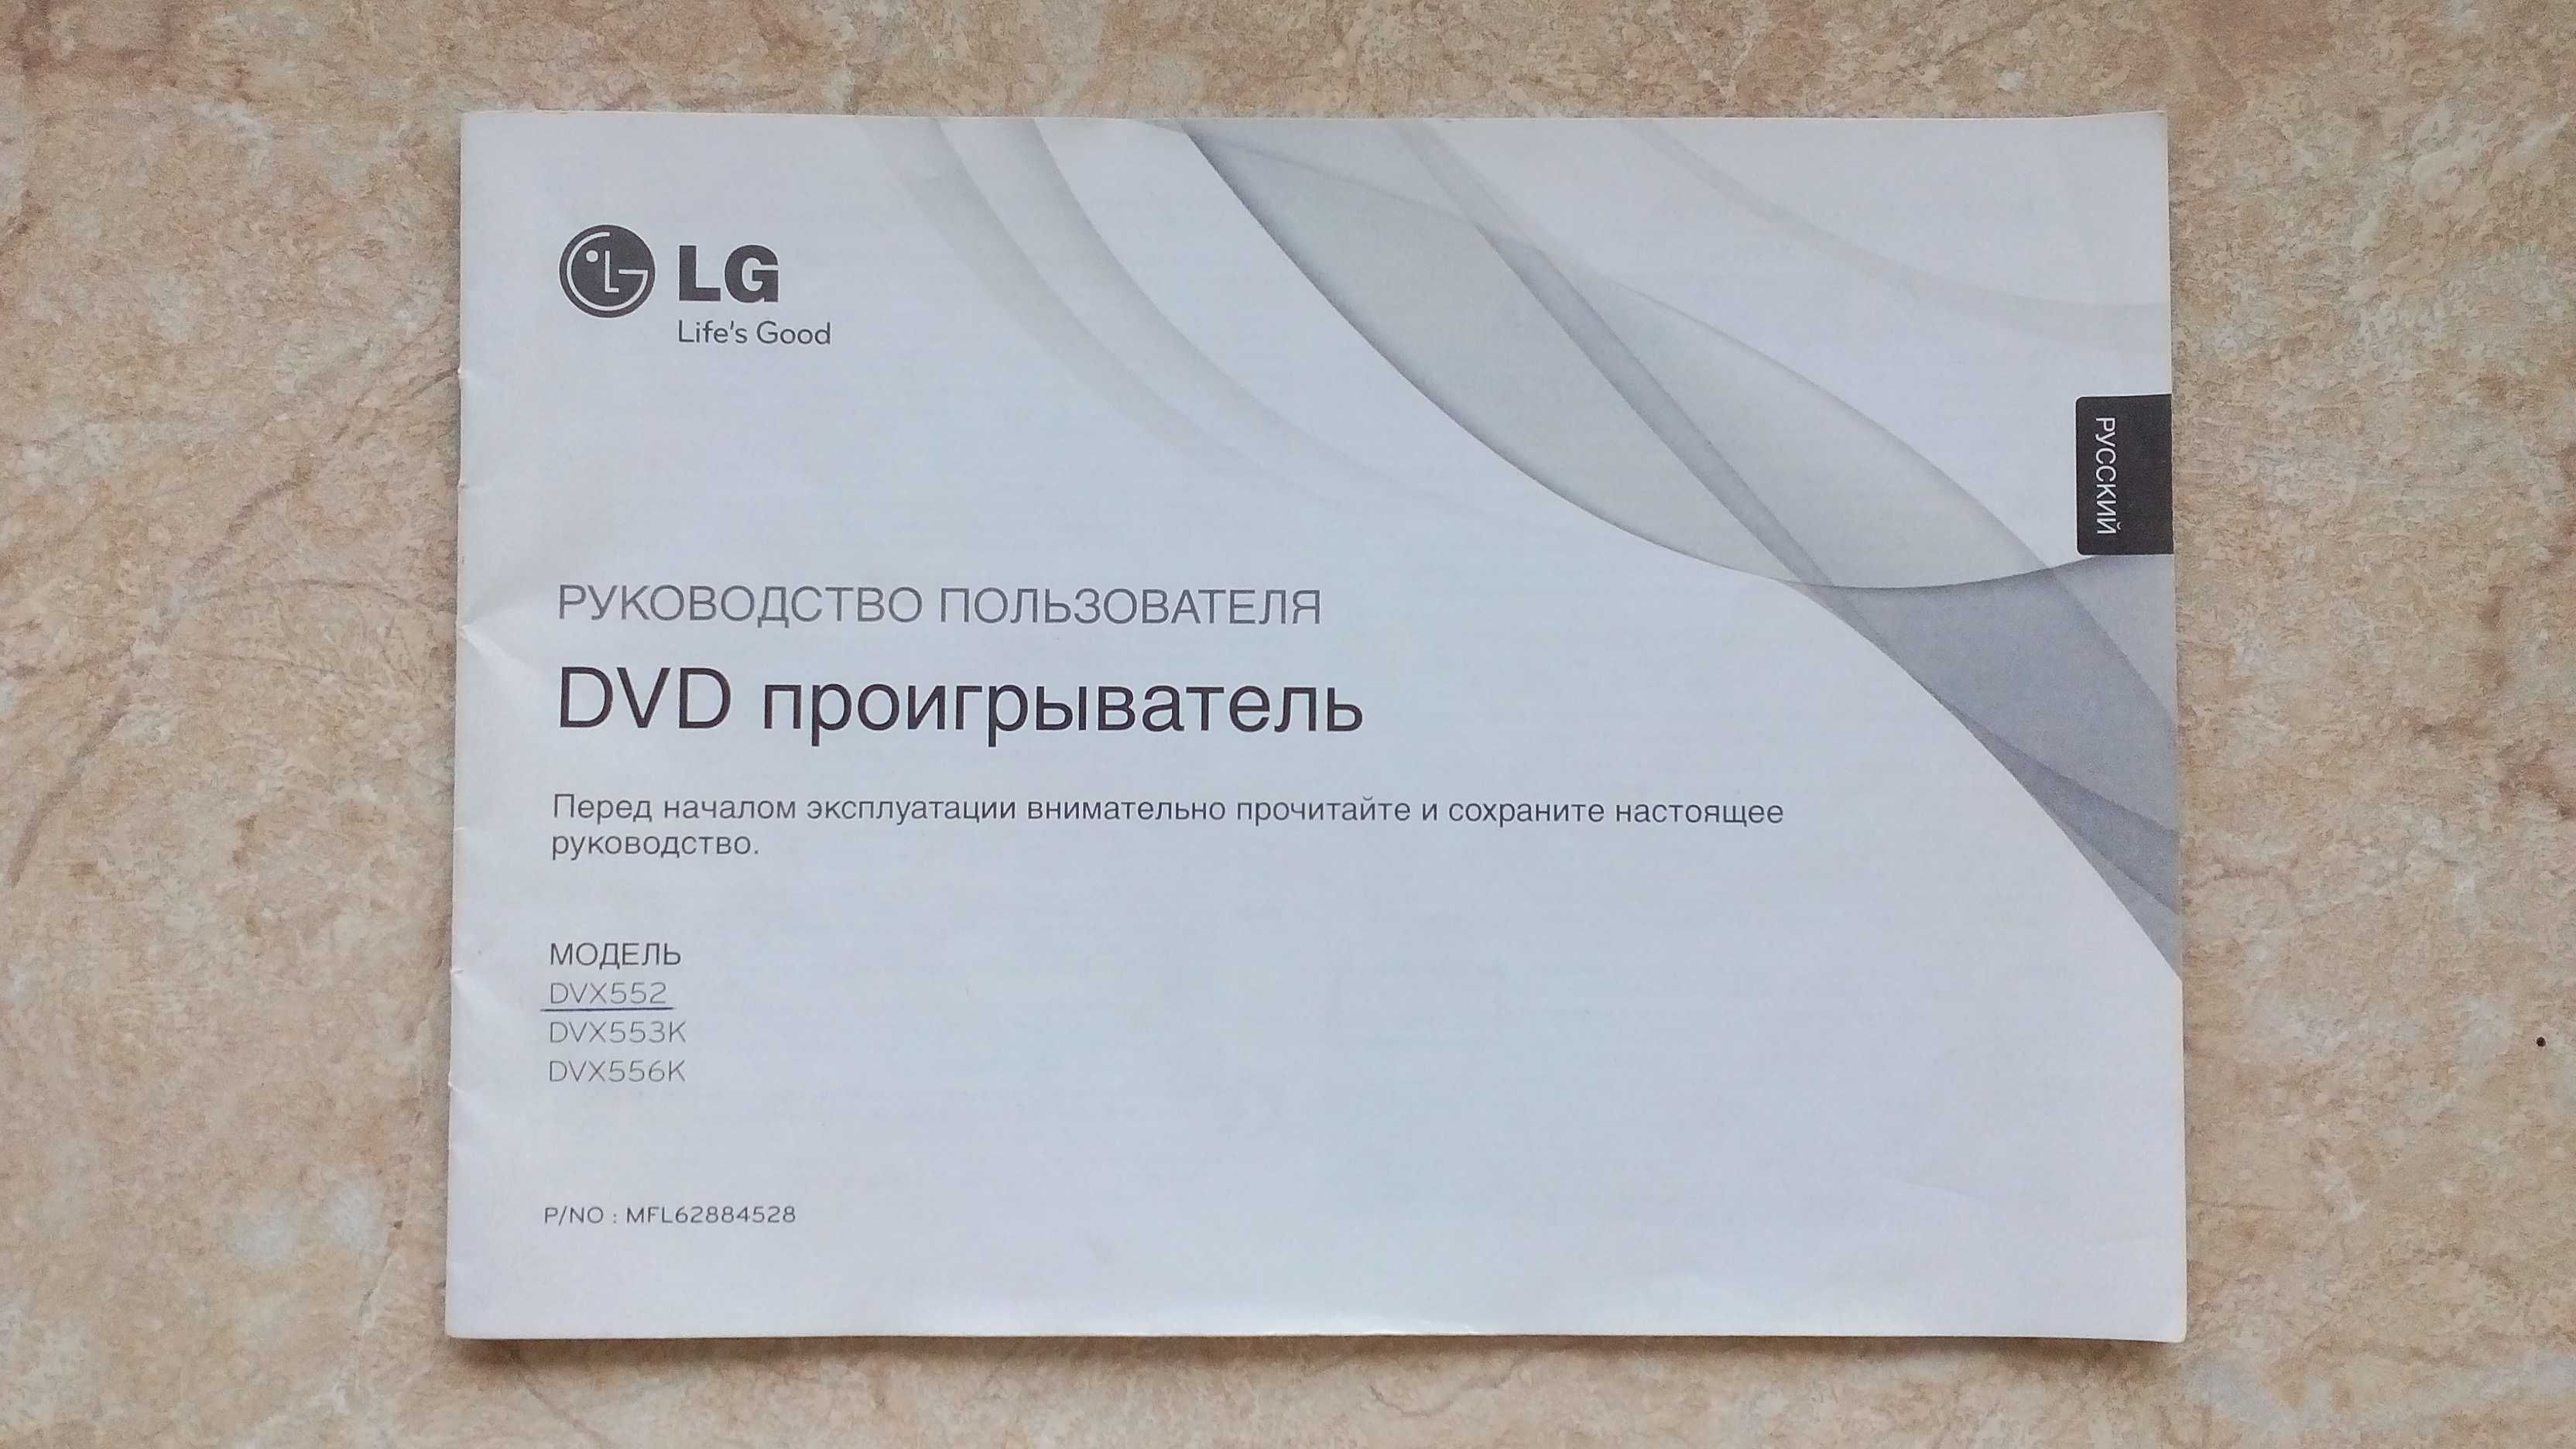 DVD-проигрыватель *LG*.